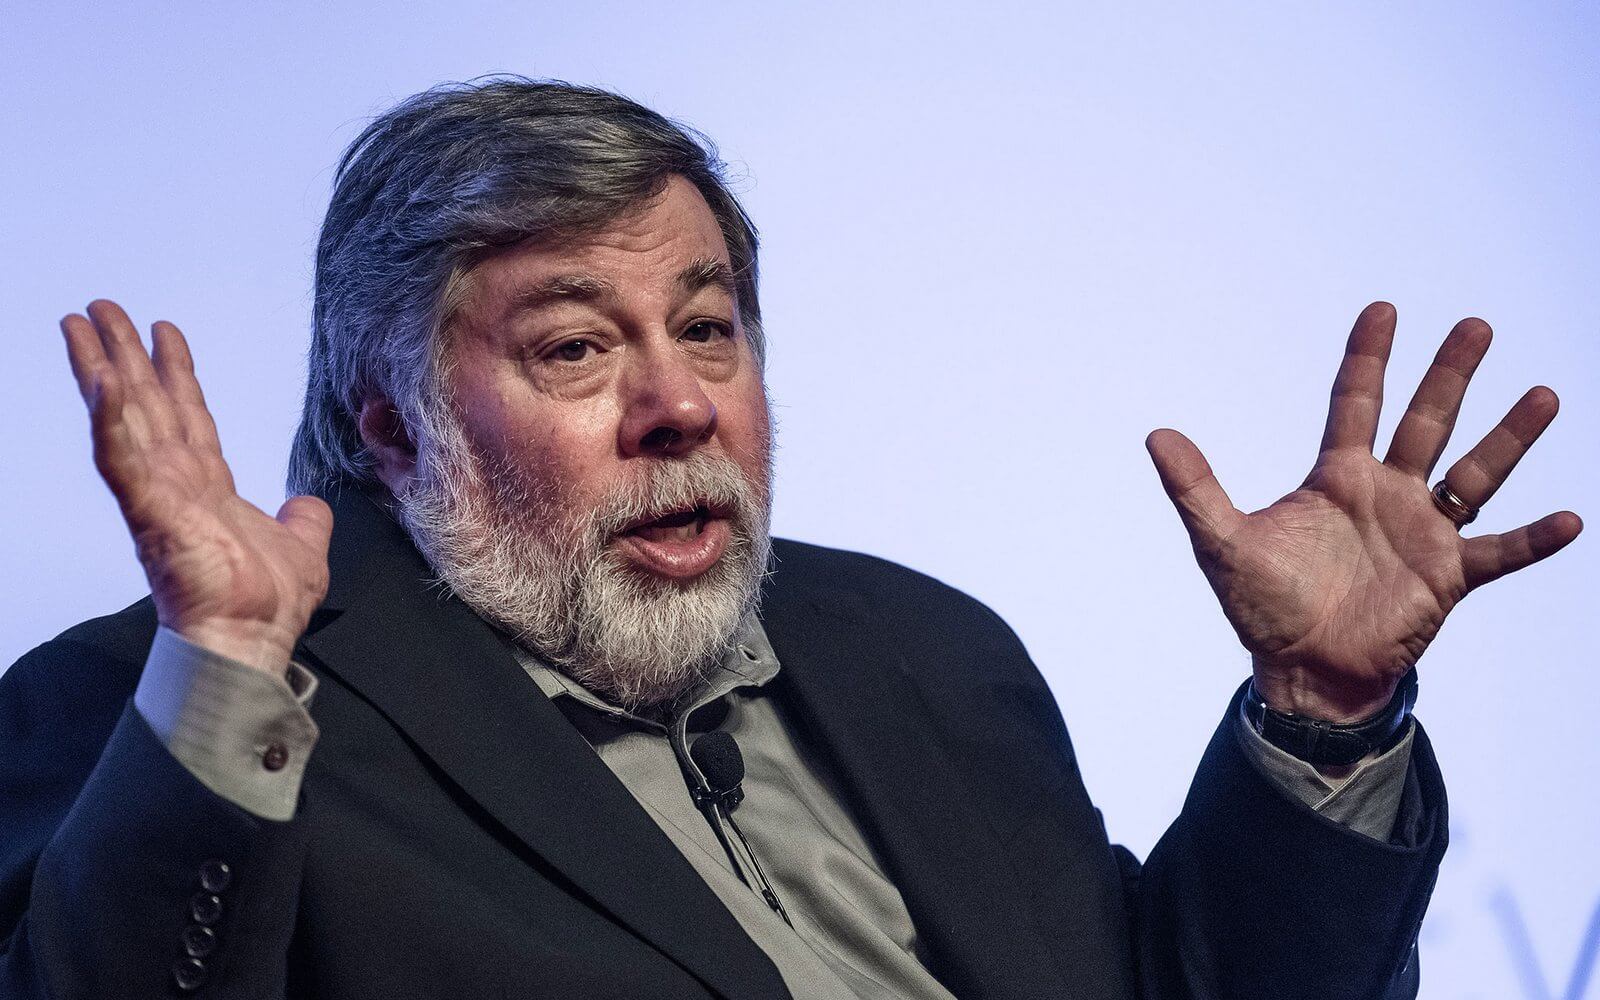 "Je ne vois vraiment pas la différence" : Steve Wozniak critique le nouvel iPhone 13